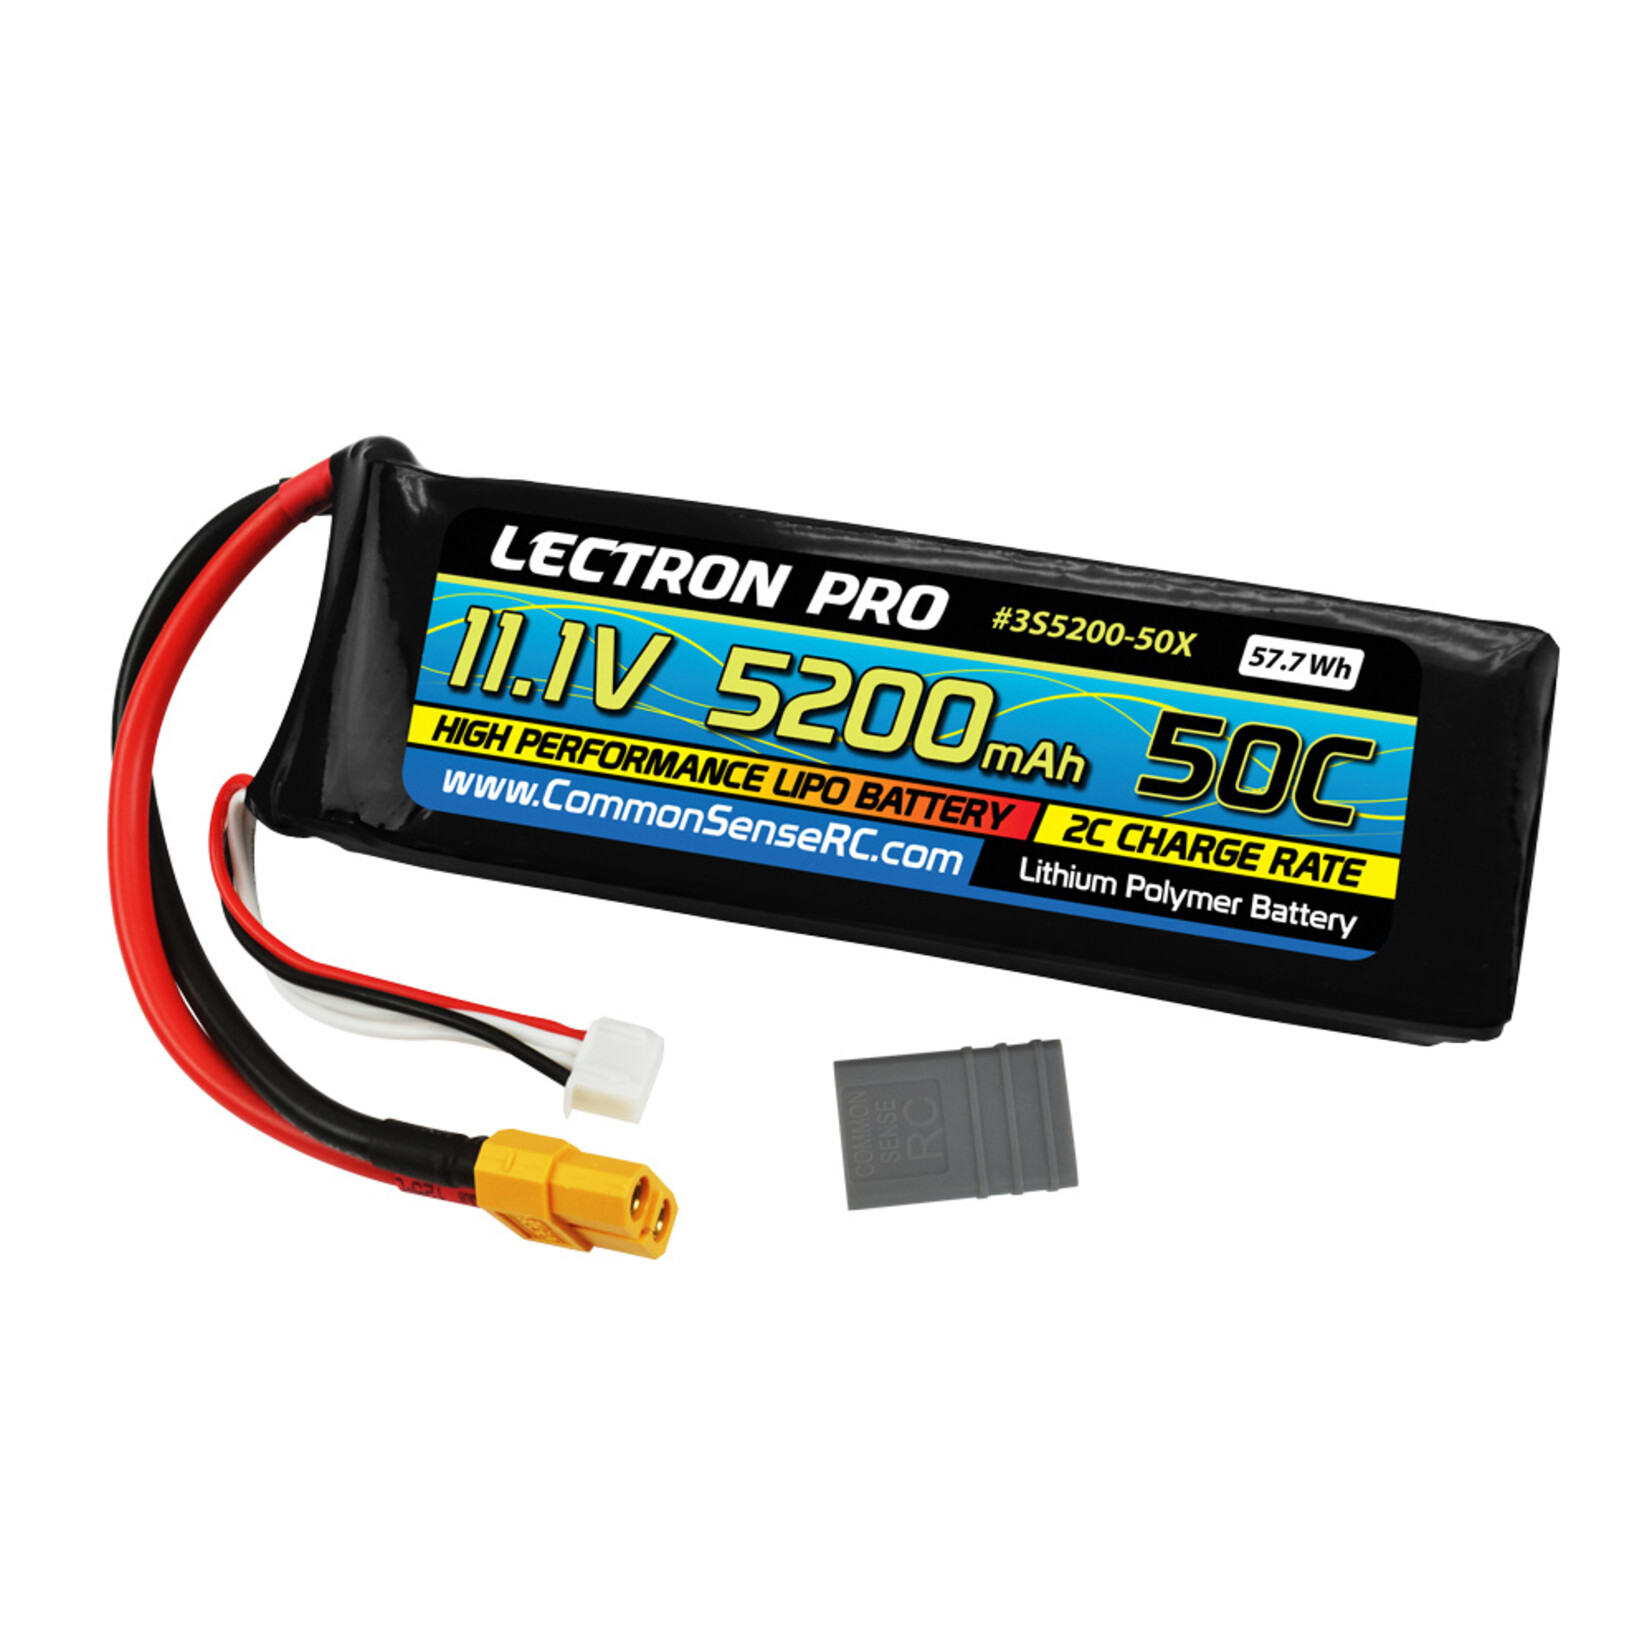 Common Sense RC Common Sense RC Lectron Pro 3S 50C LiPo Battery w/XT60 (11.1V/5200mAh) #3S5200-50X